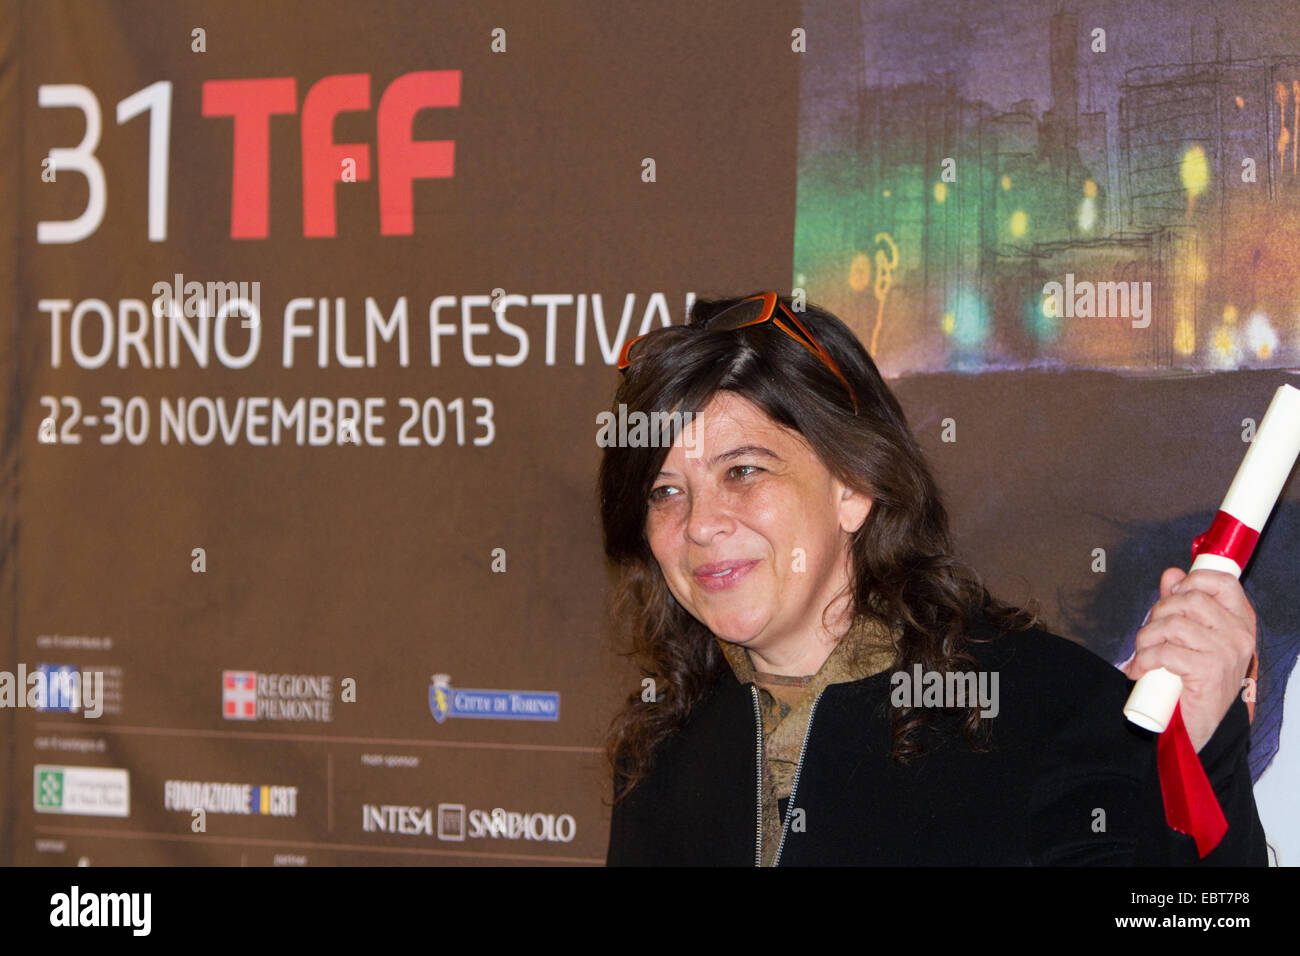 El director de cine venezolana Mariana Rondón recibe el premio al Mejor Guión por la película "Pelo Malo" en el Torino Film Festival. Foto de stock